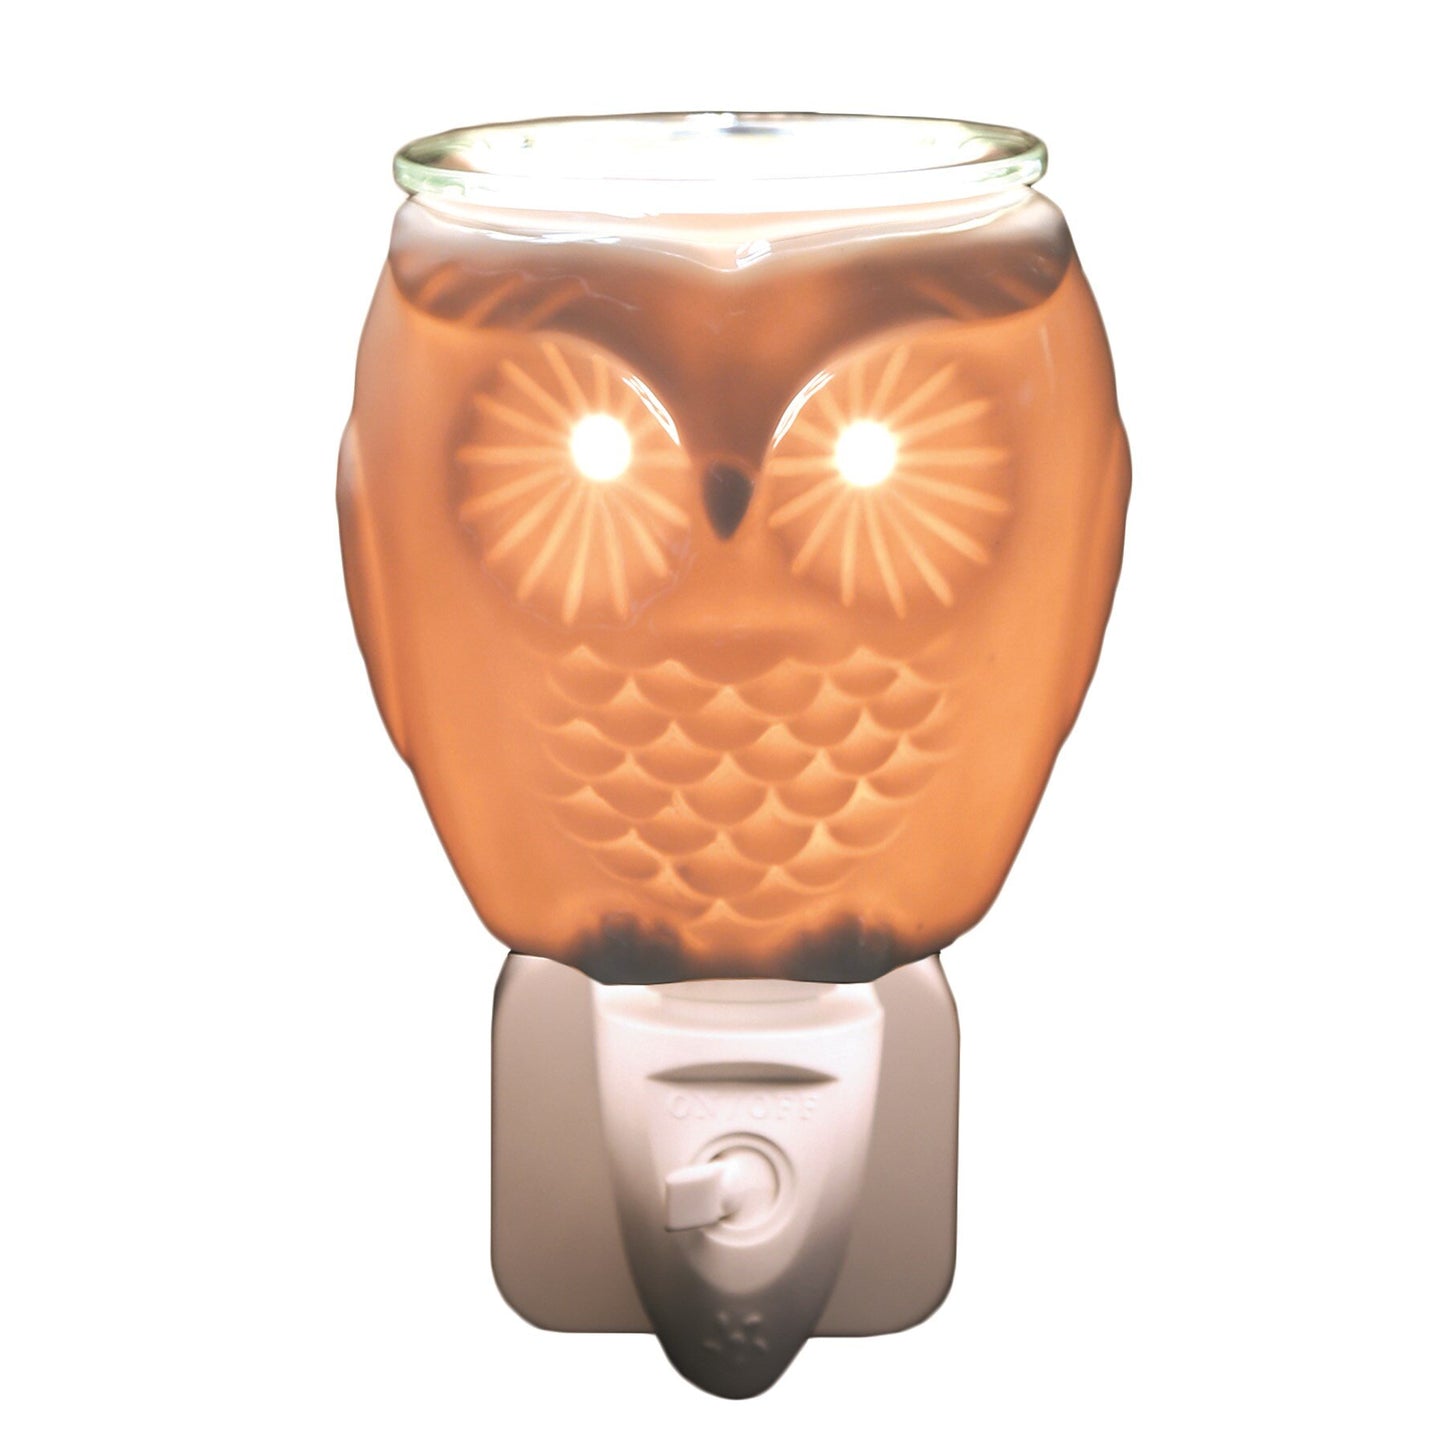 Wax Melt Burner Plug In - Ceramic Owl AR1568